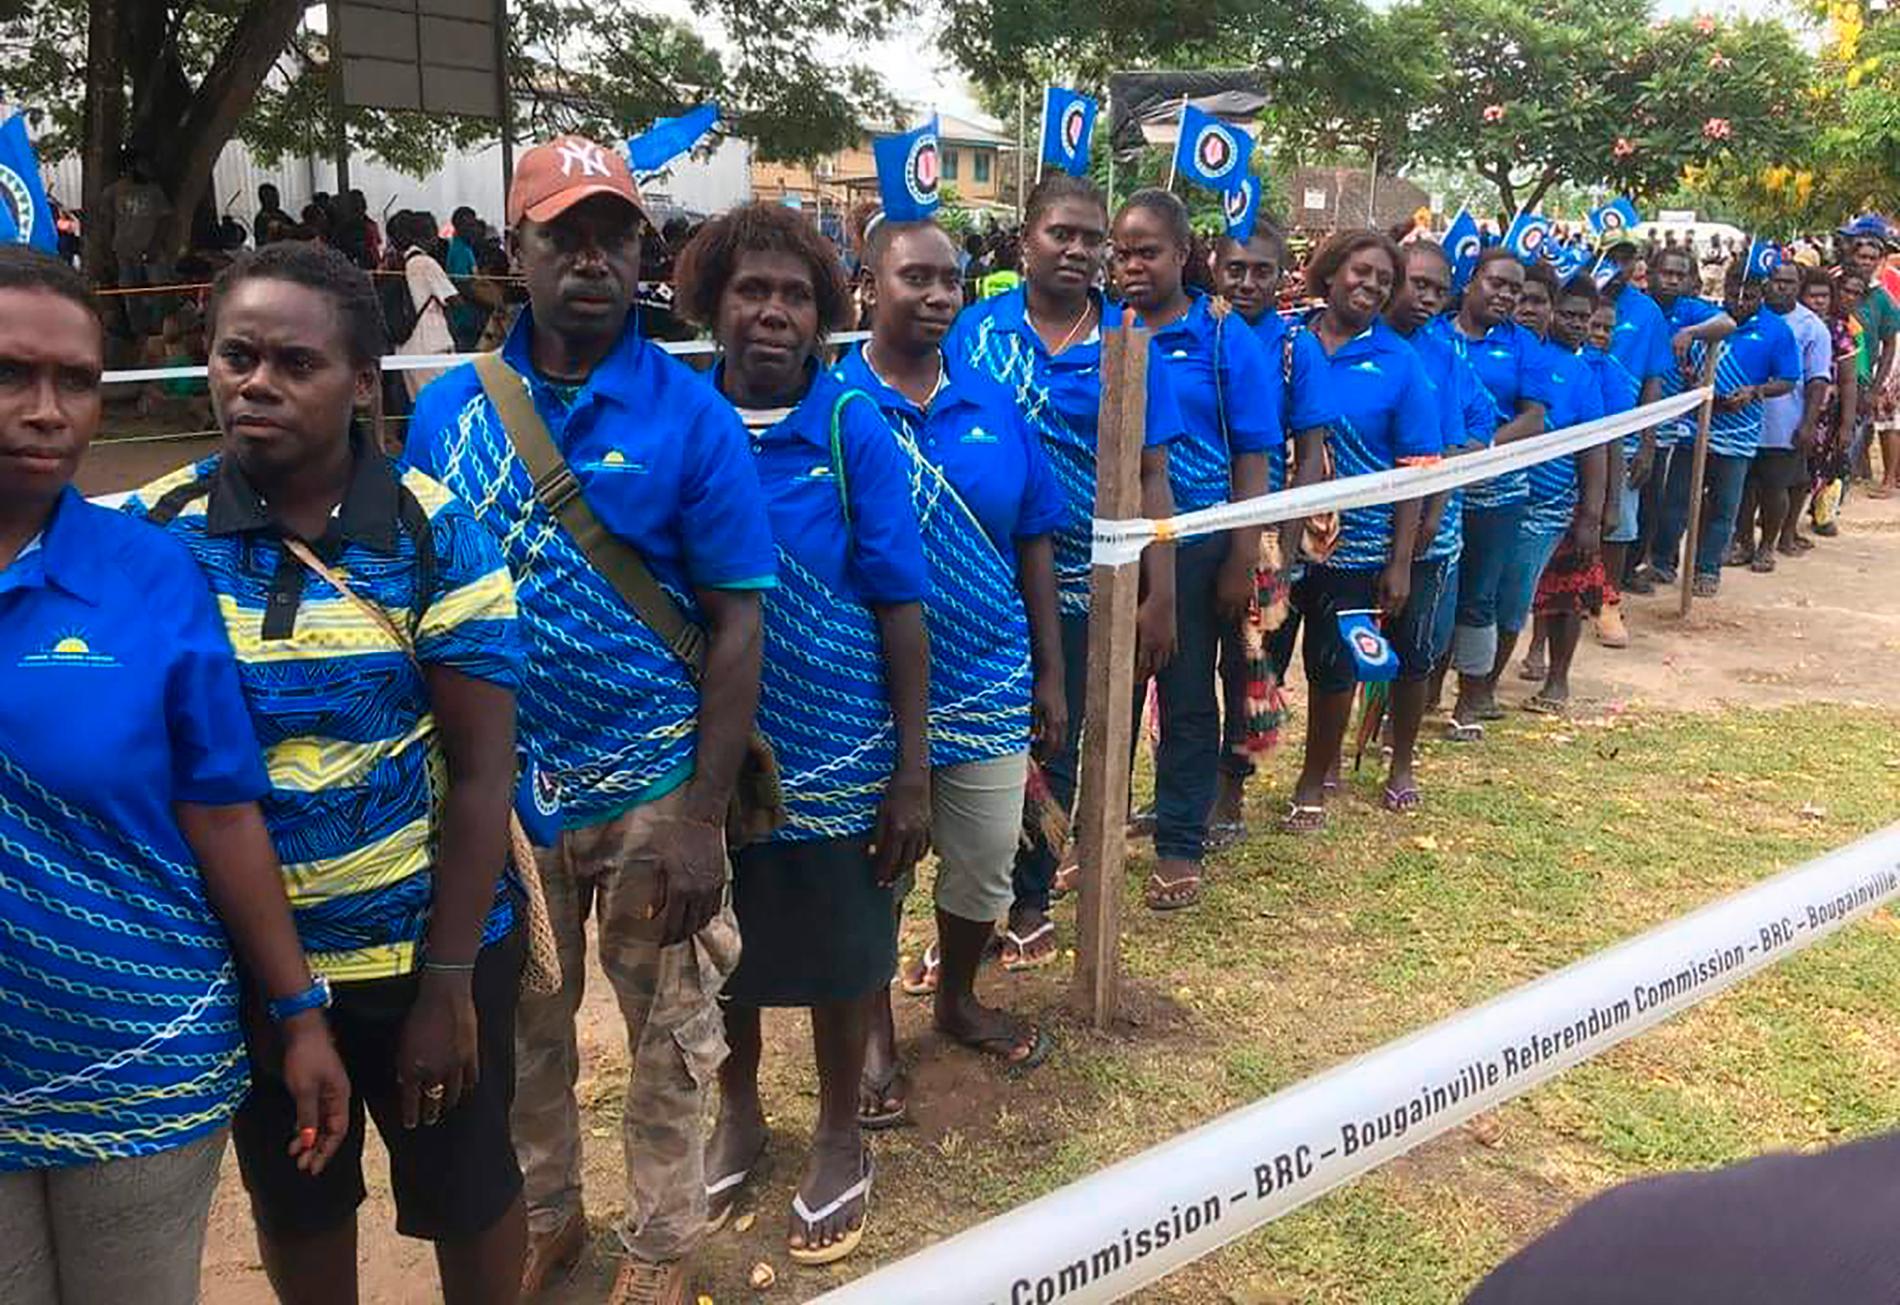 Intresset var stort för att delta i folkomröstningen i Bougainville.